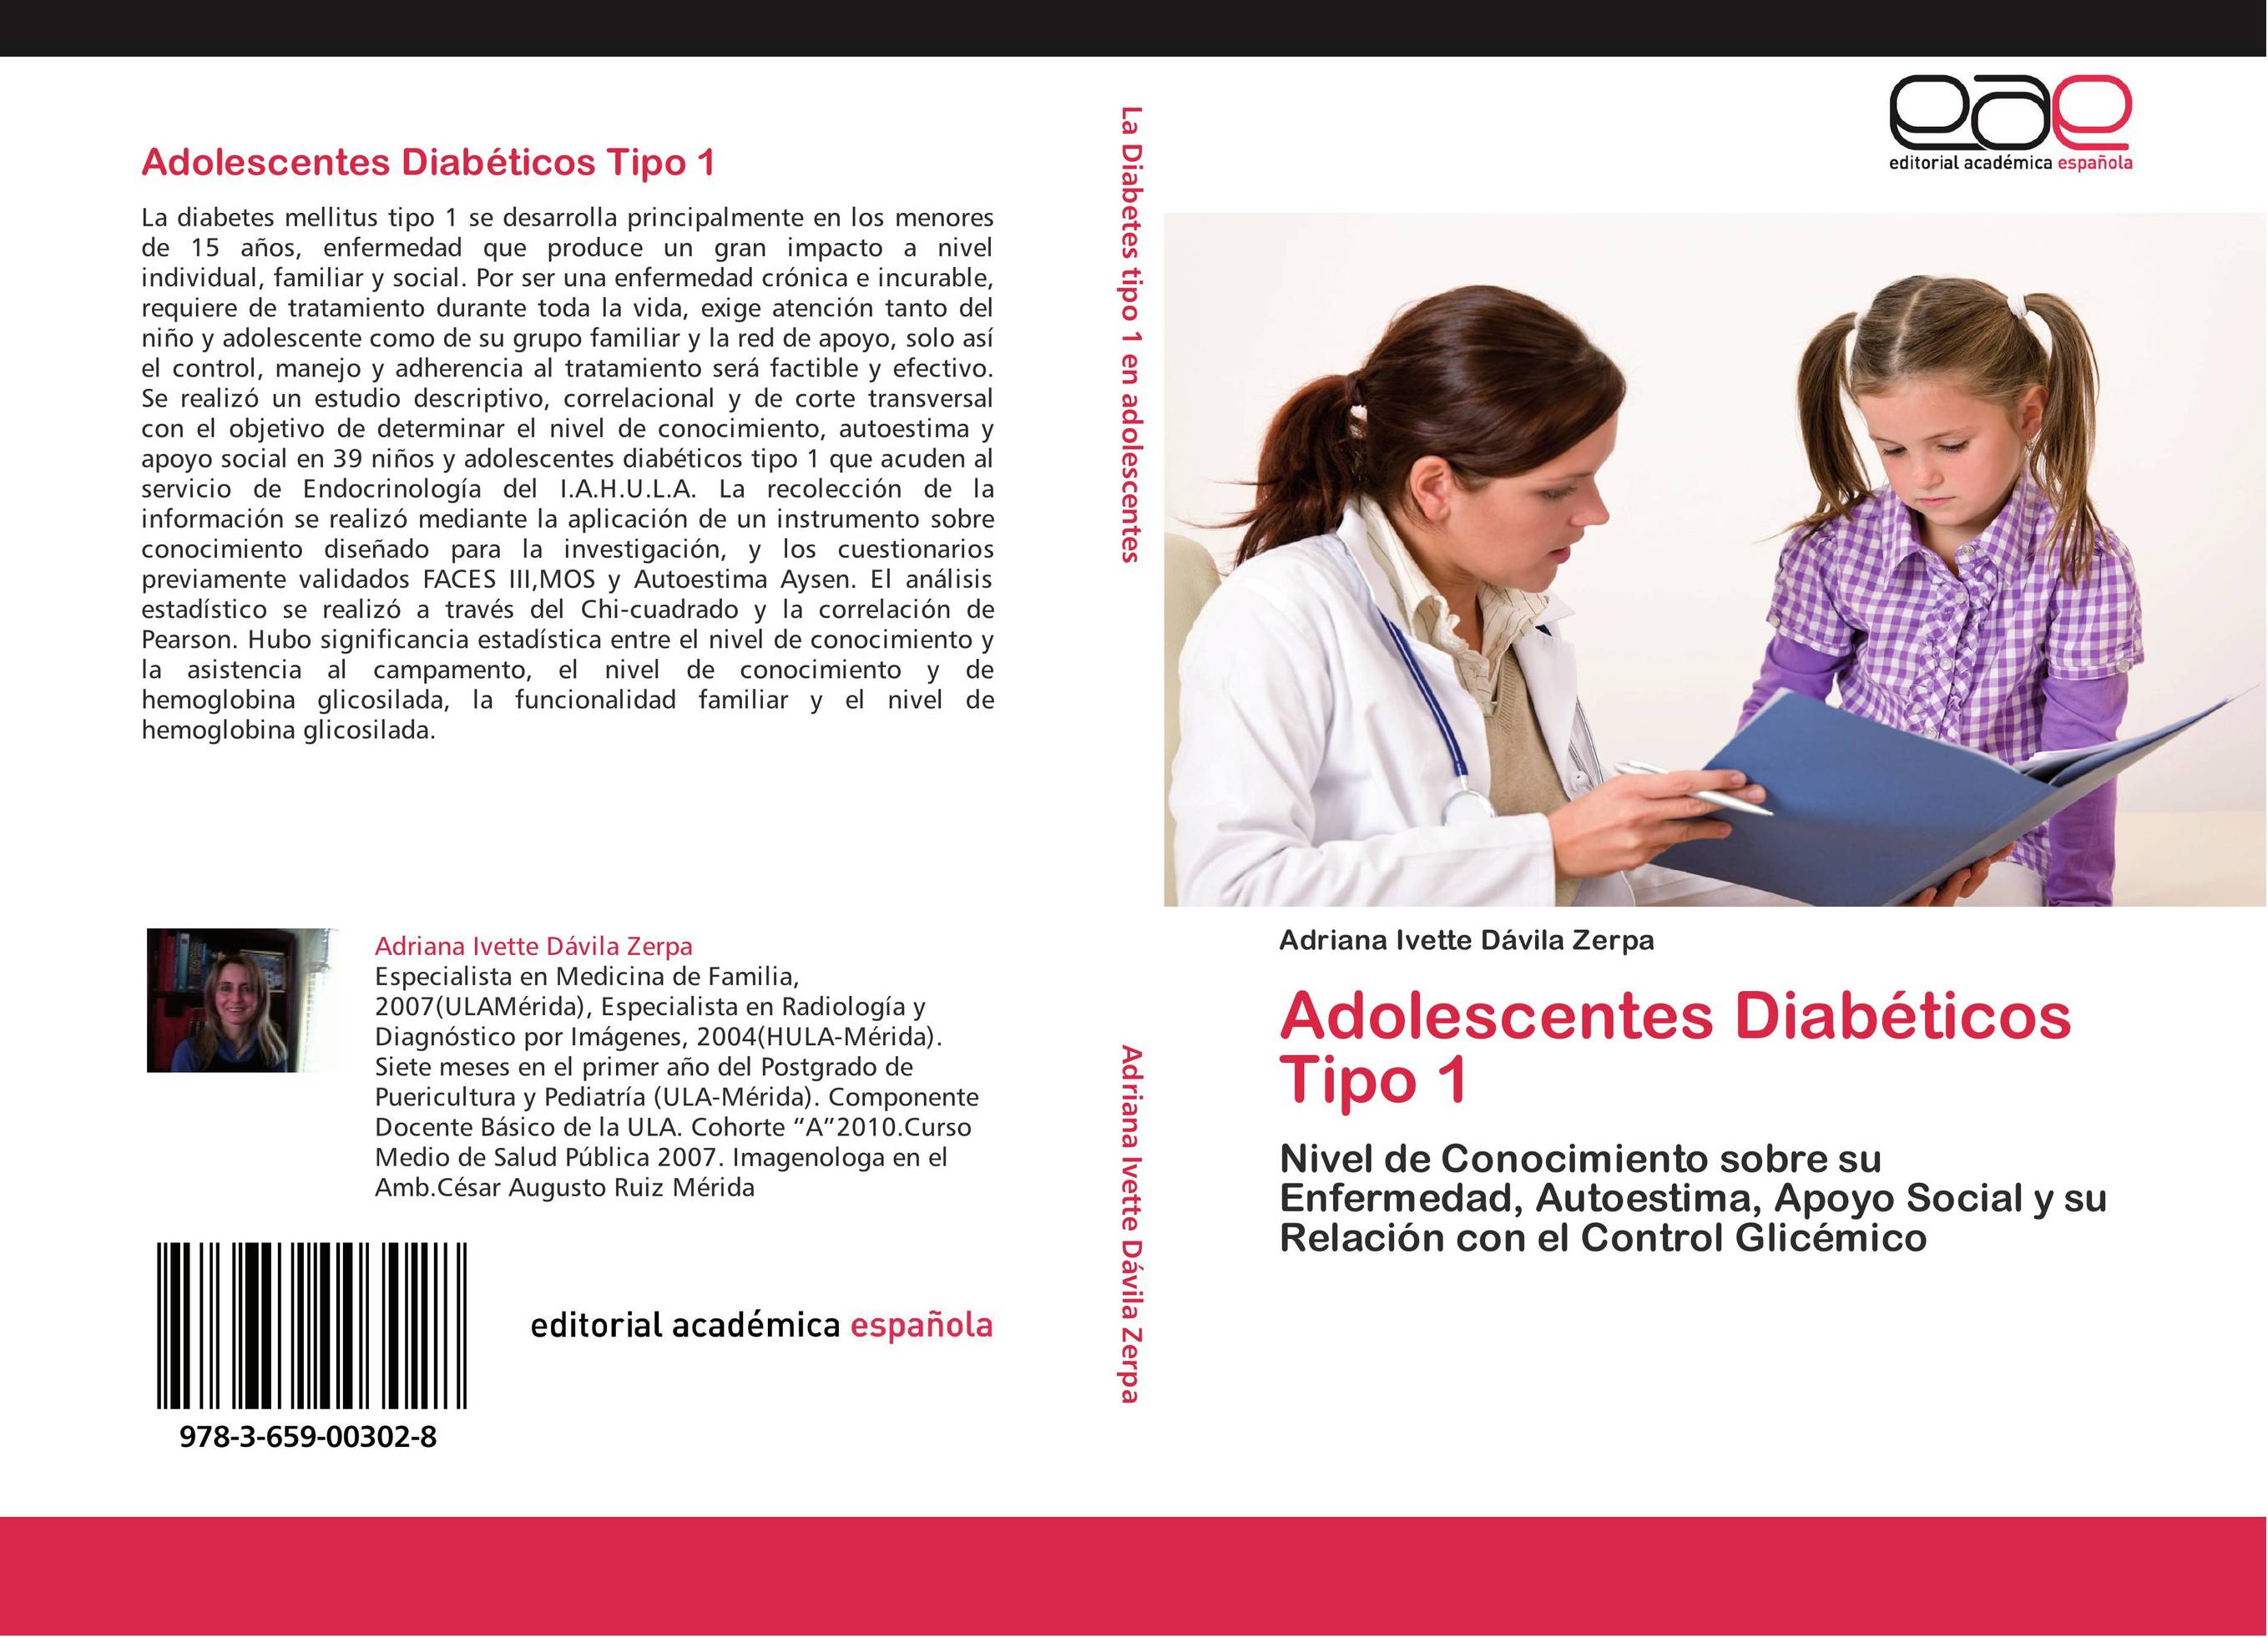 Adolescentes Diabéticos Tipo 1